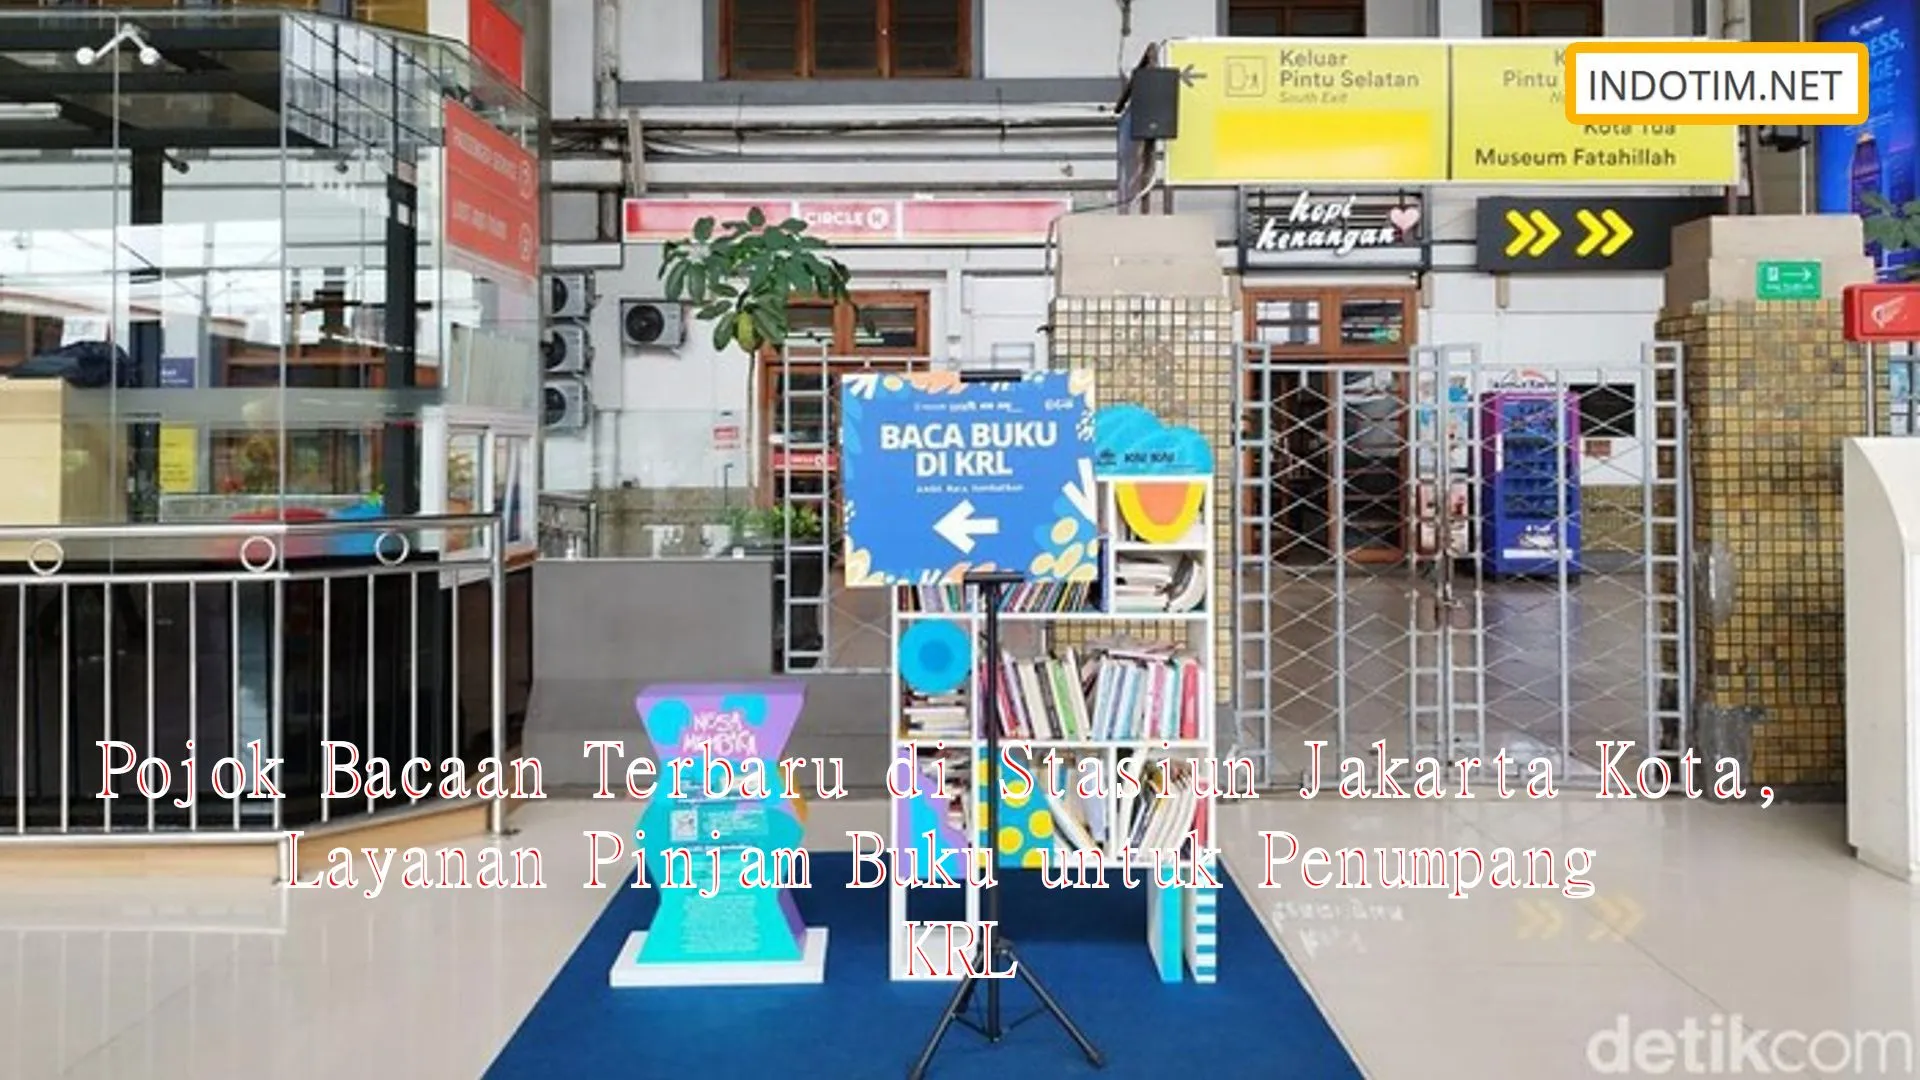 Pojok Bacaan Terbaru di Stasiun Jakarta Kota, Layanan Pinjam Buku untuk Penumpang KRL